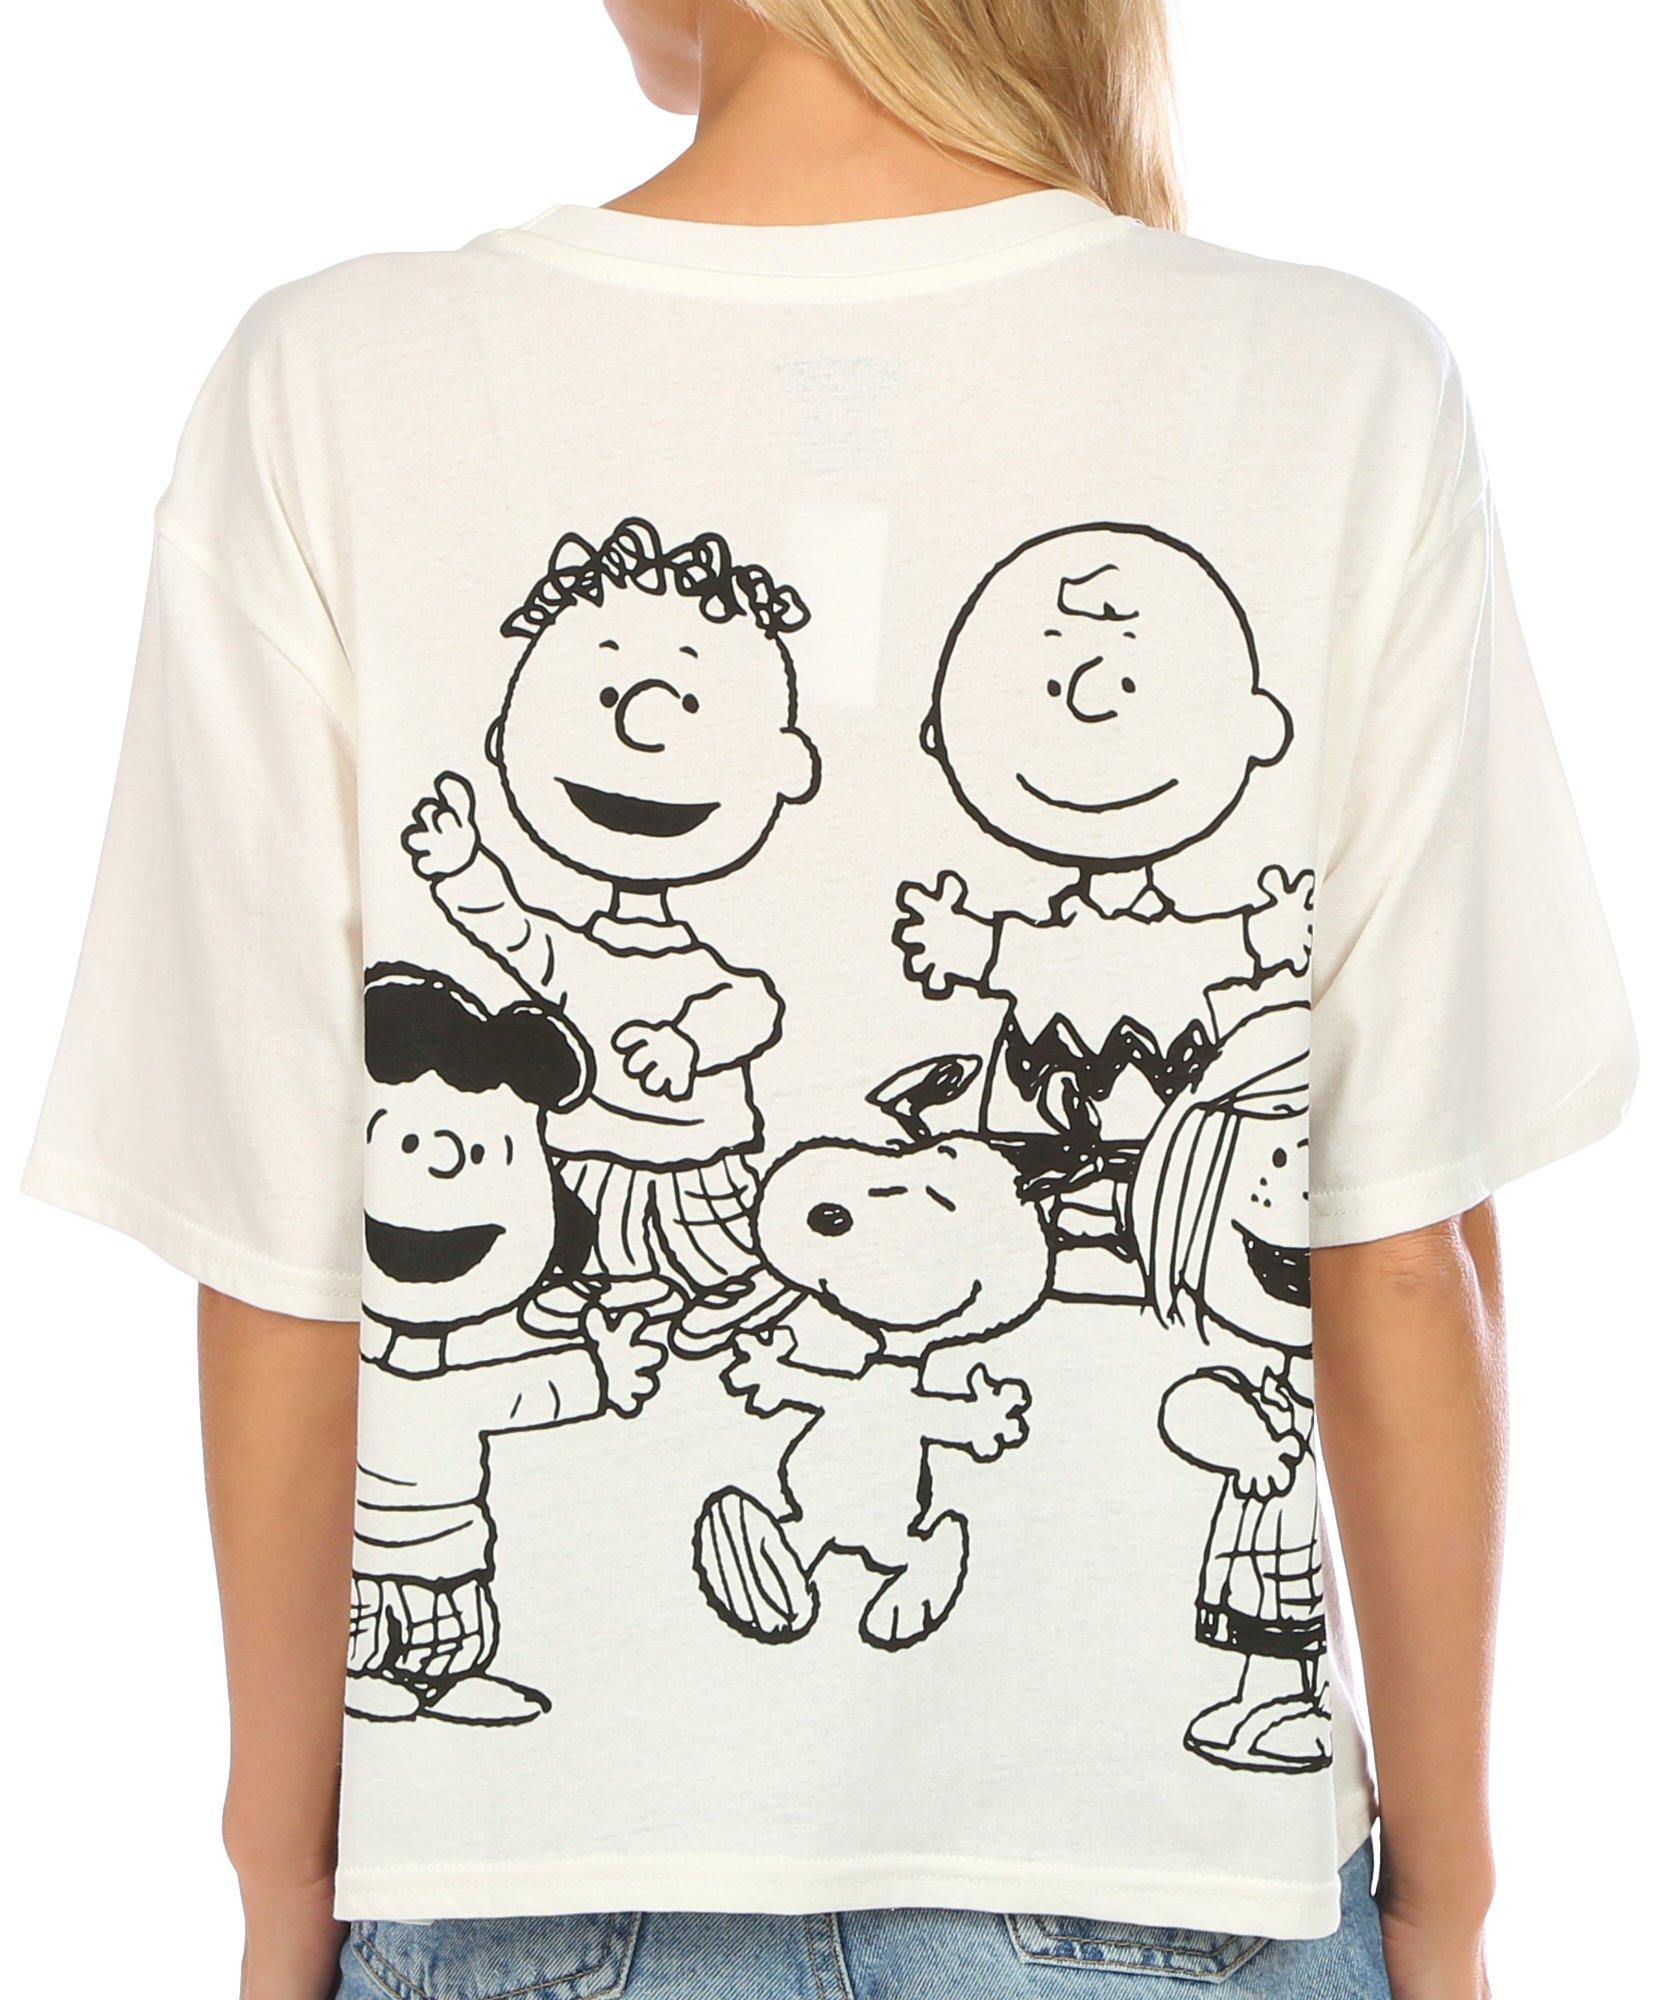 Juniors Stay Cool Peanuts T-Shirt